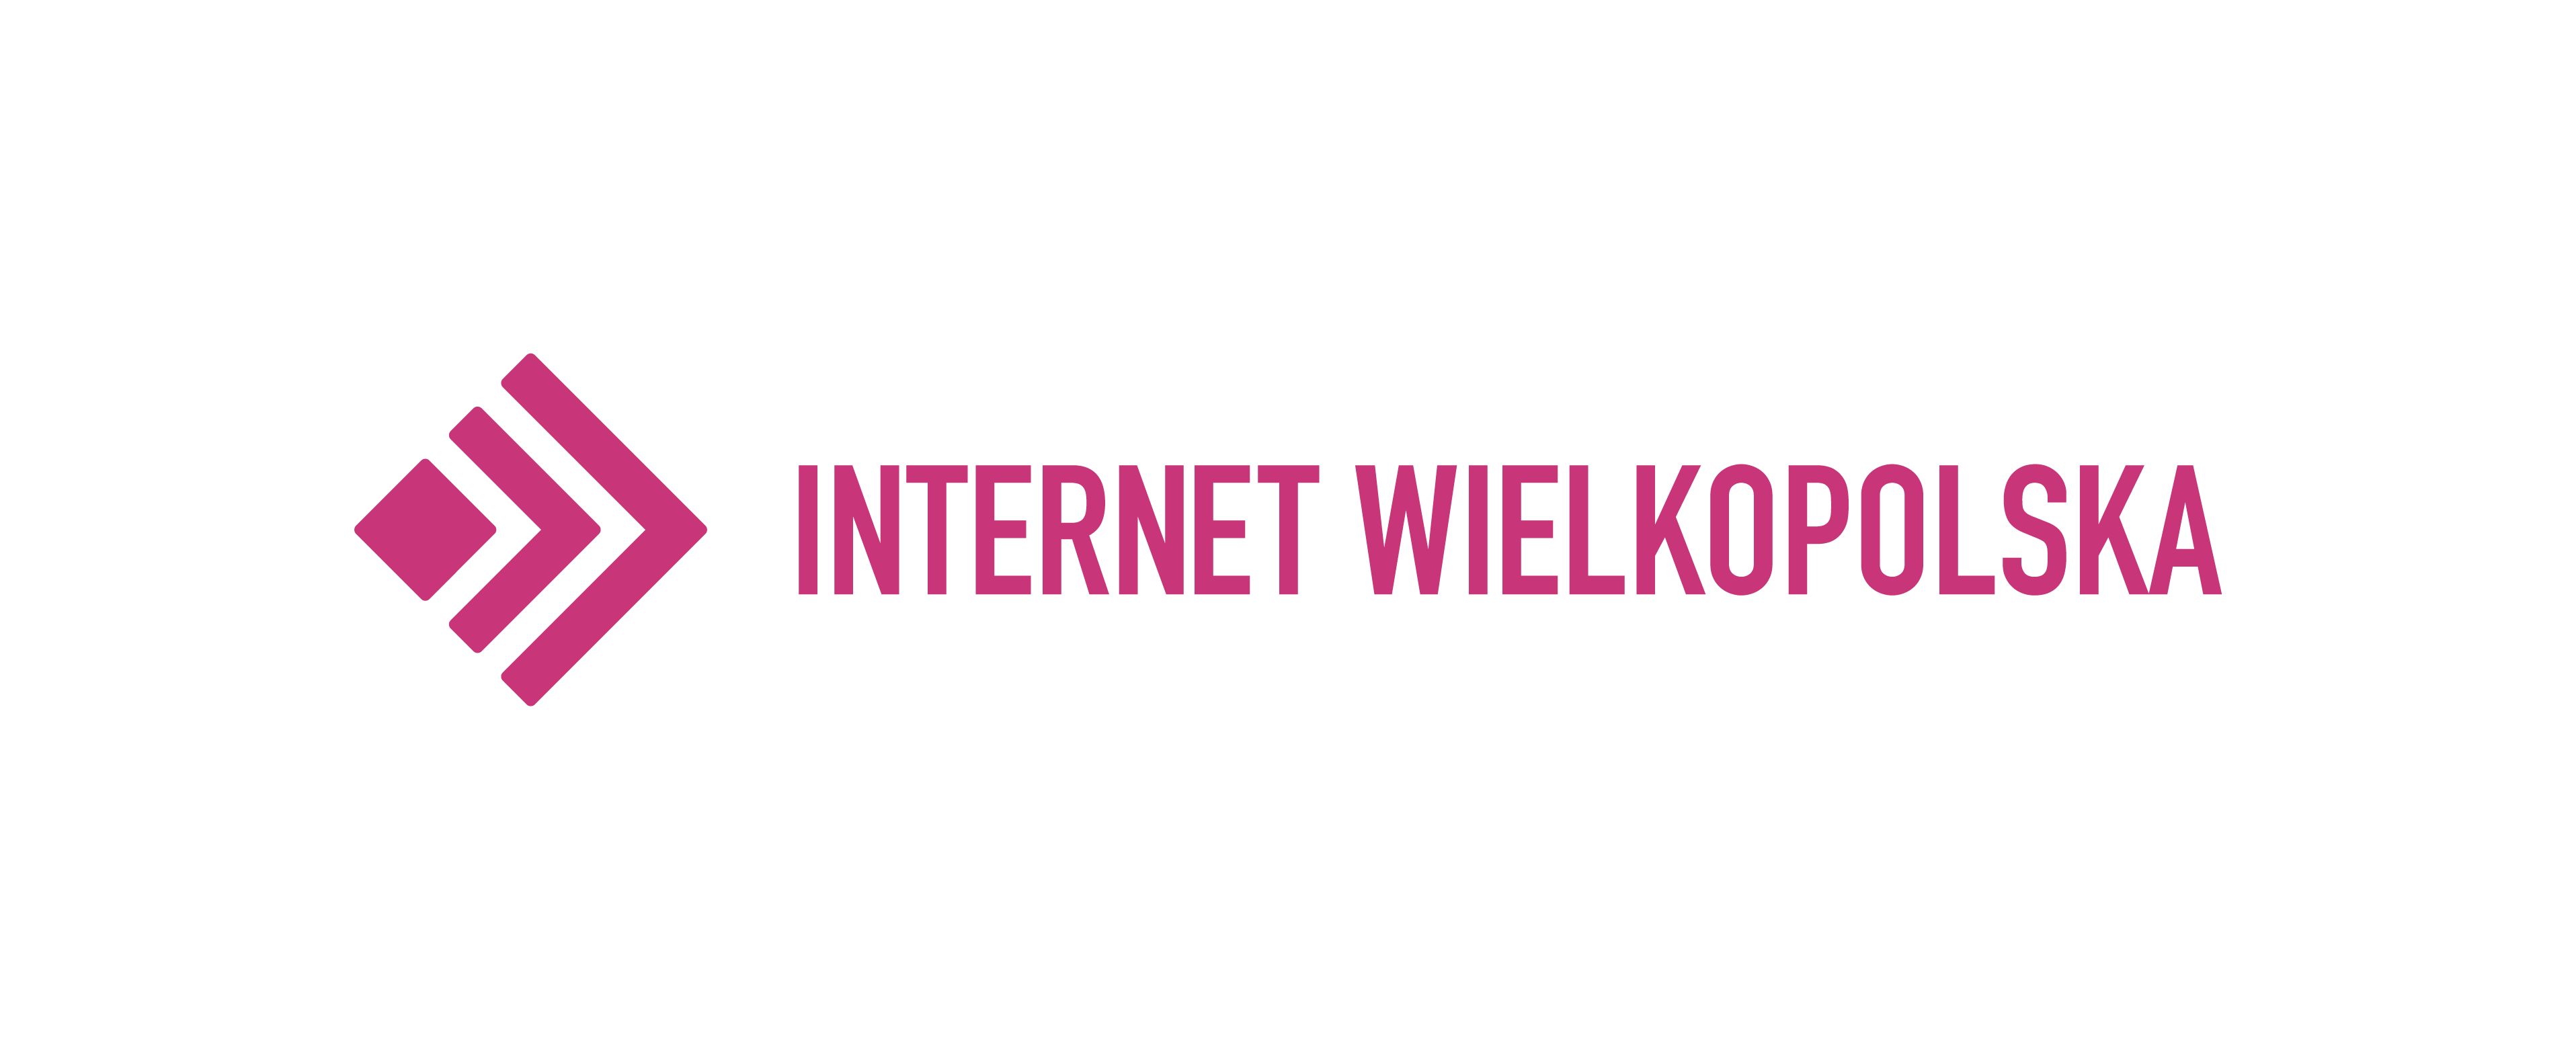 Internet Wielkopolska - Operator Sieci CZEMPIN.NET